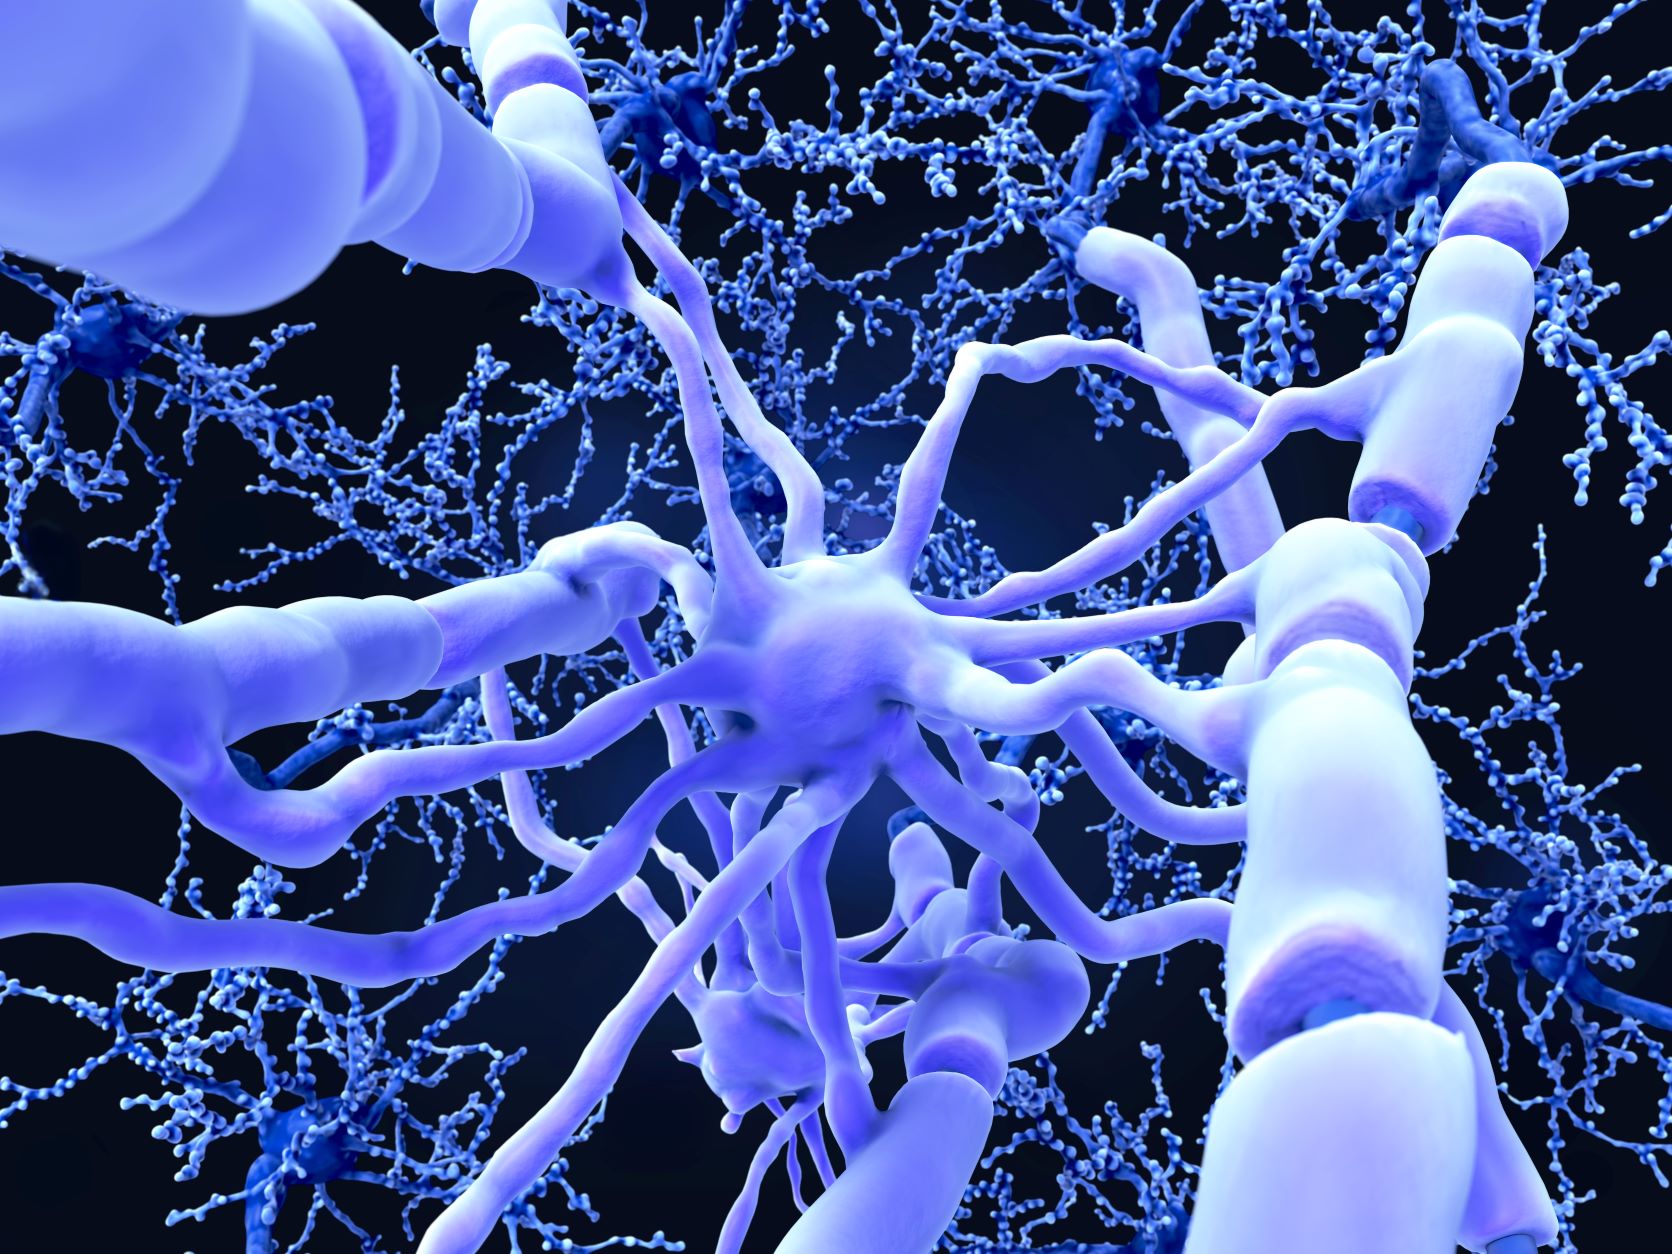 Un oligodendrocyte formant une gaine de myéline autour d'un axone. les nœuds de Ranvier, zone sans myéline sont visibles© Juan Gärtner, Adobe Stock